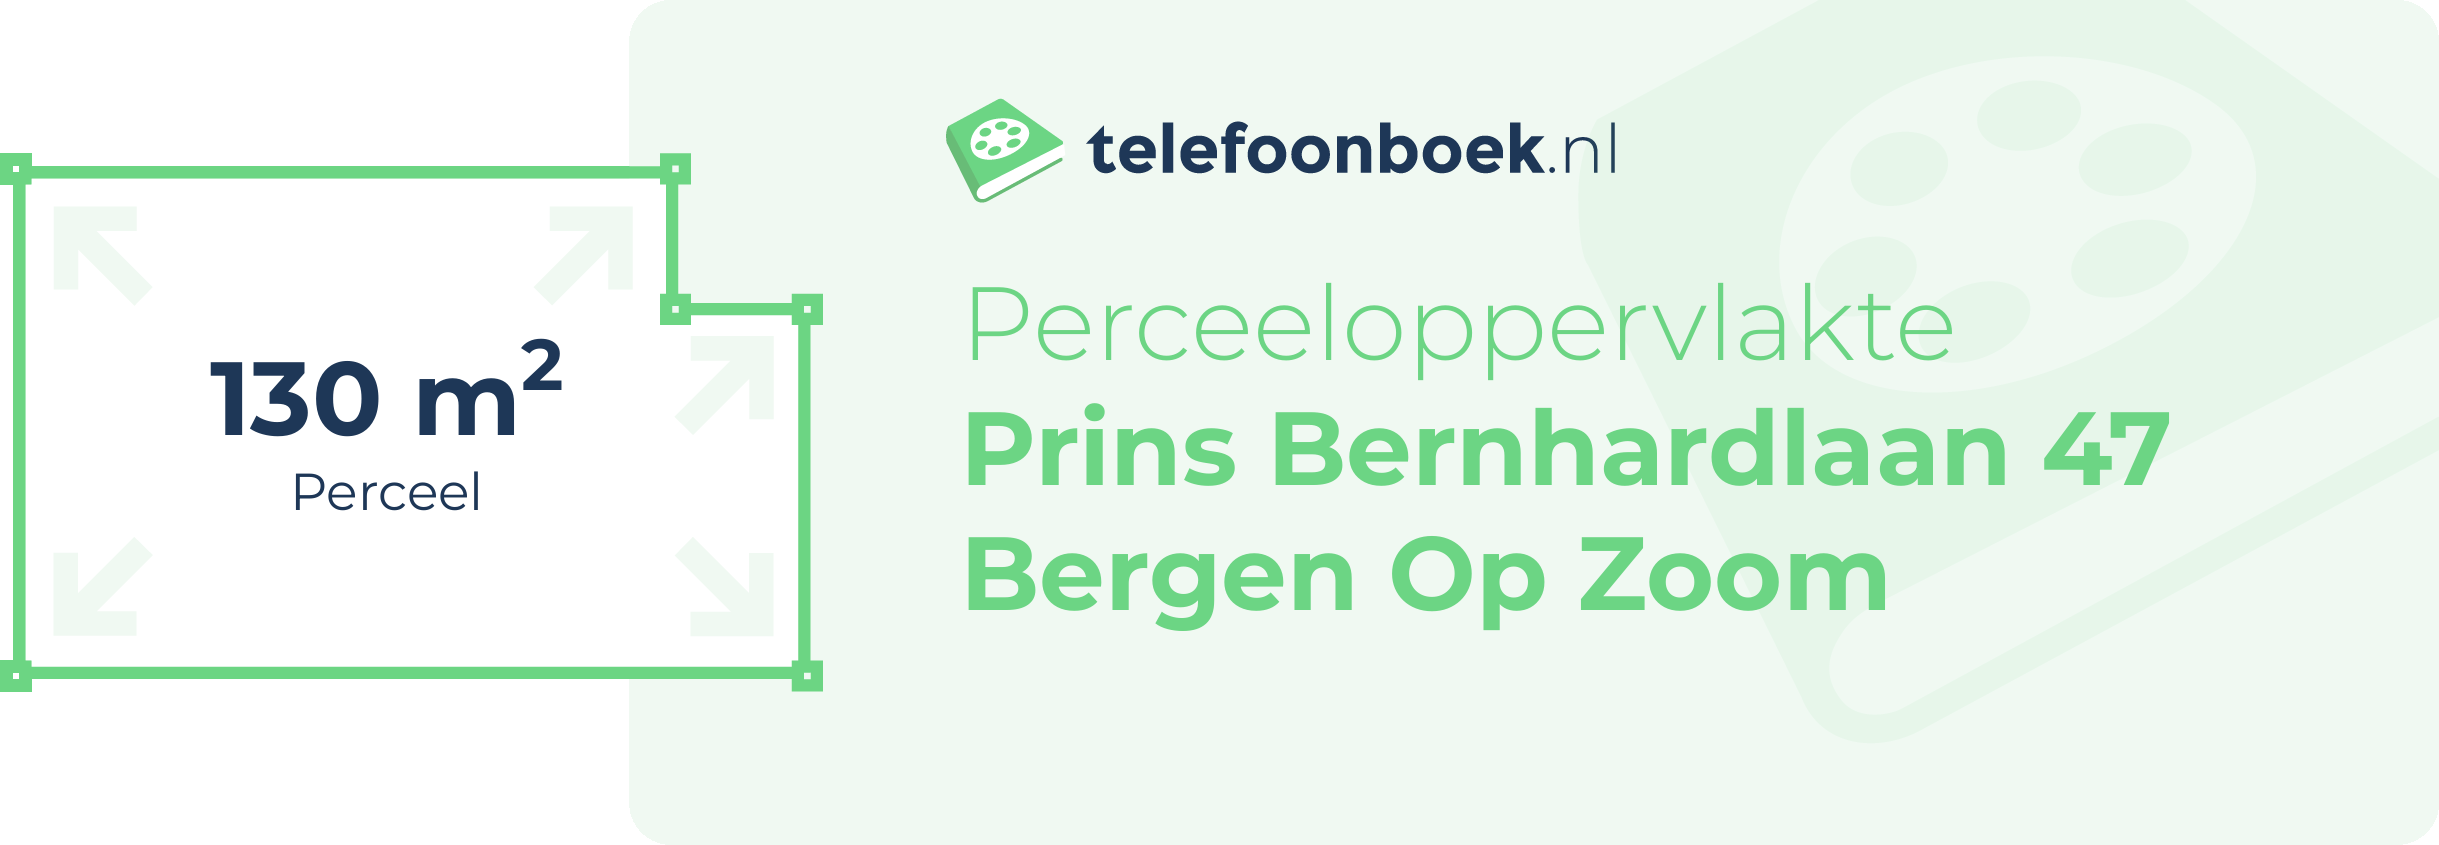 Perceeloppervlakte Prins Bernhardlaan 47 Bergen Op Zoom